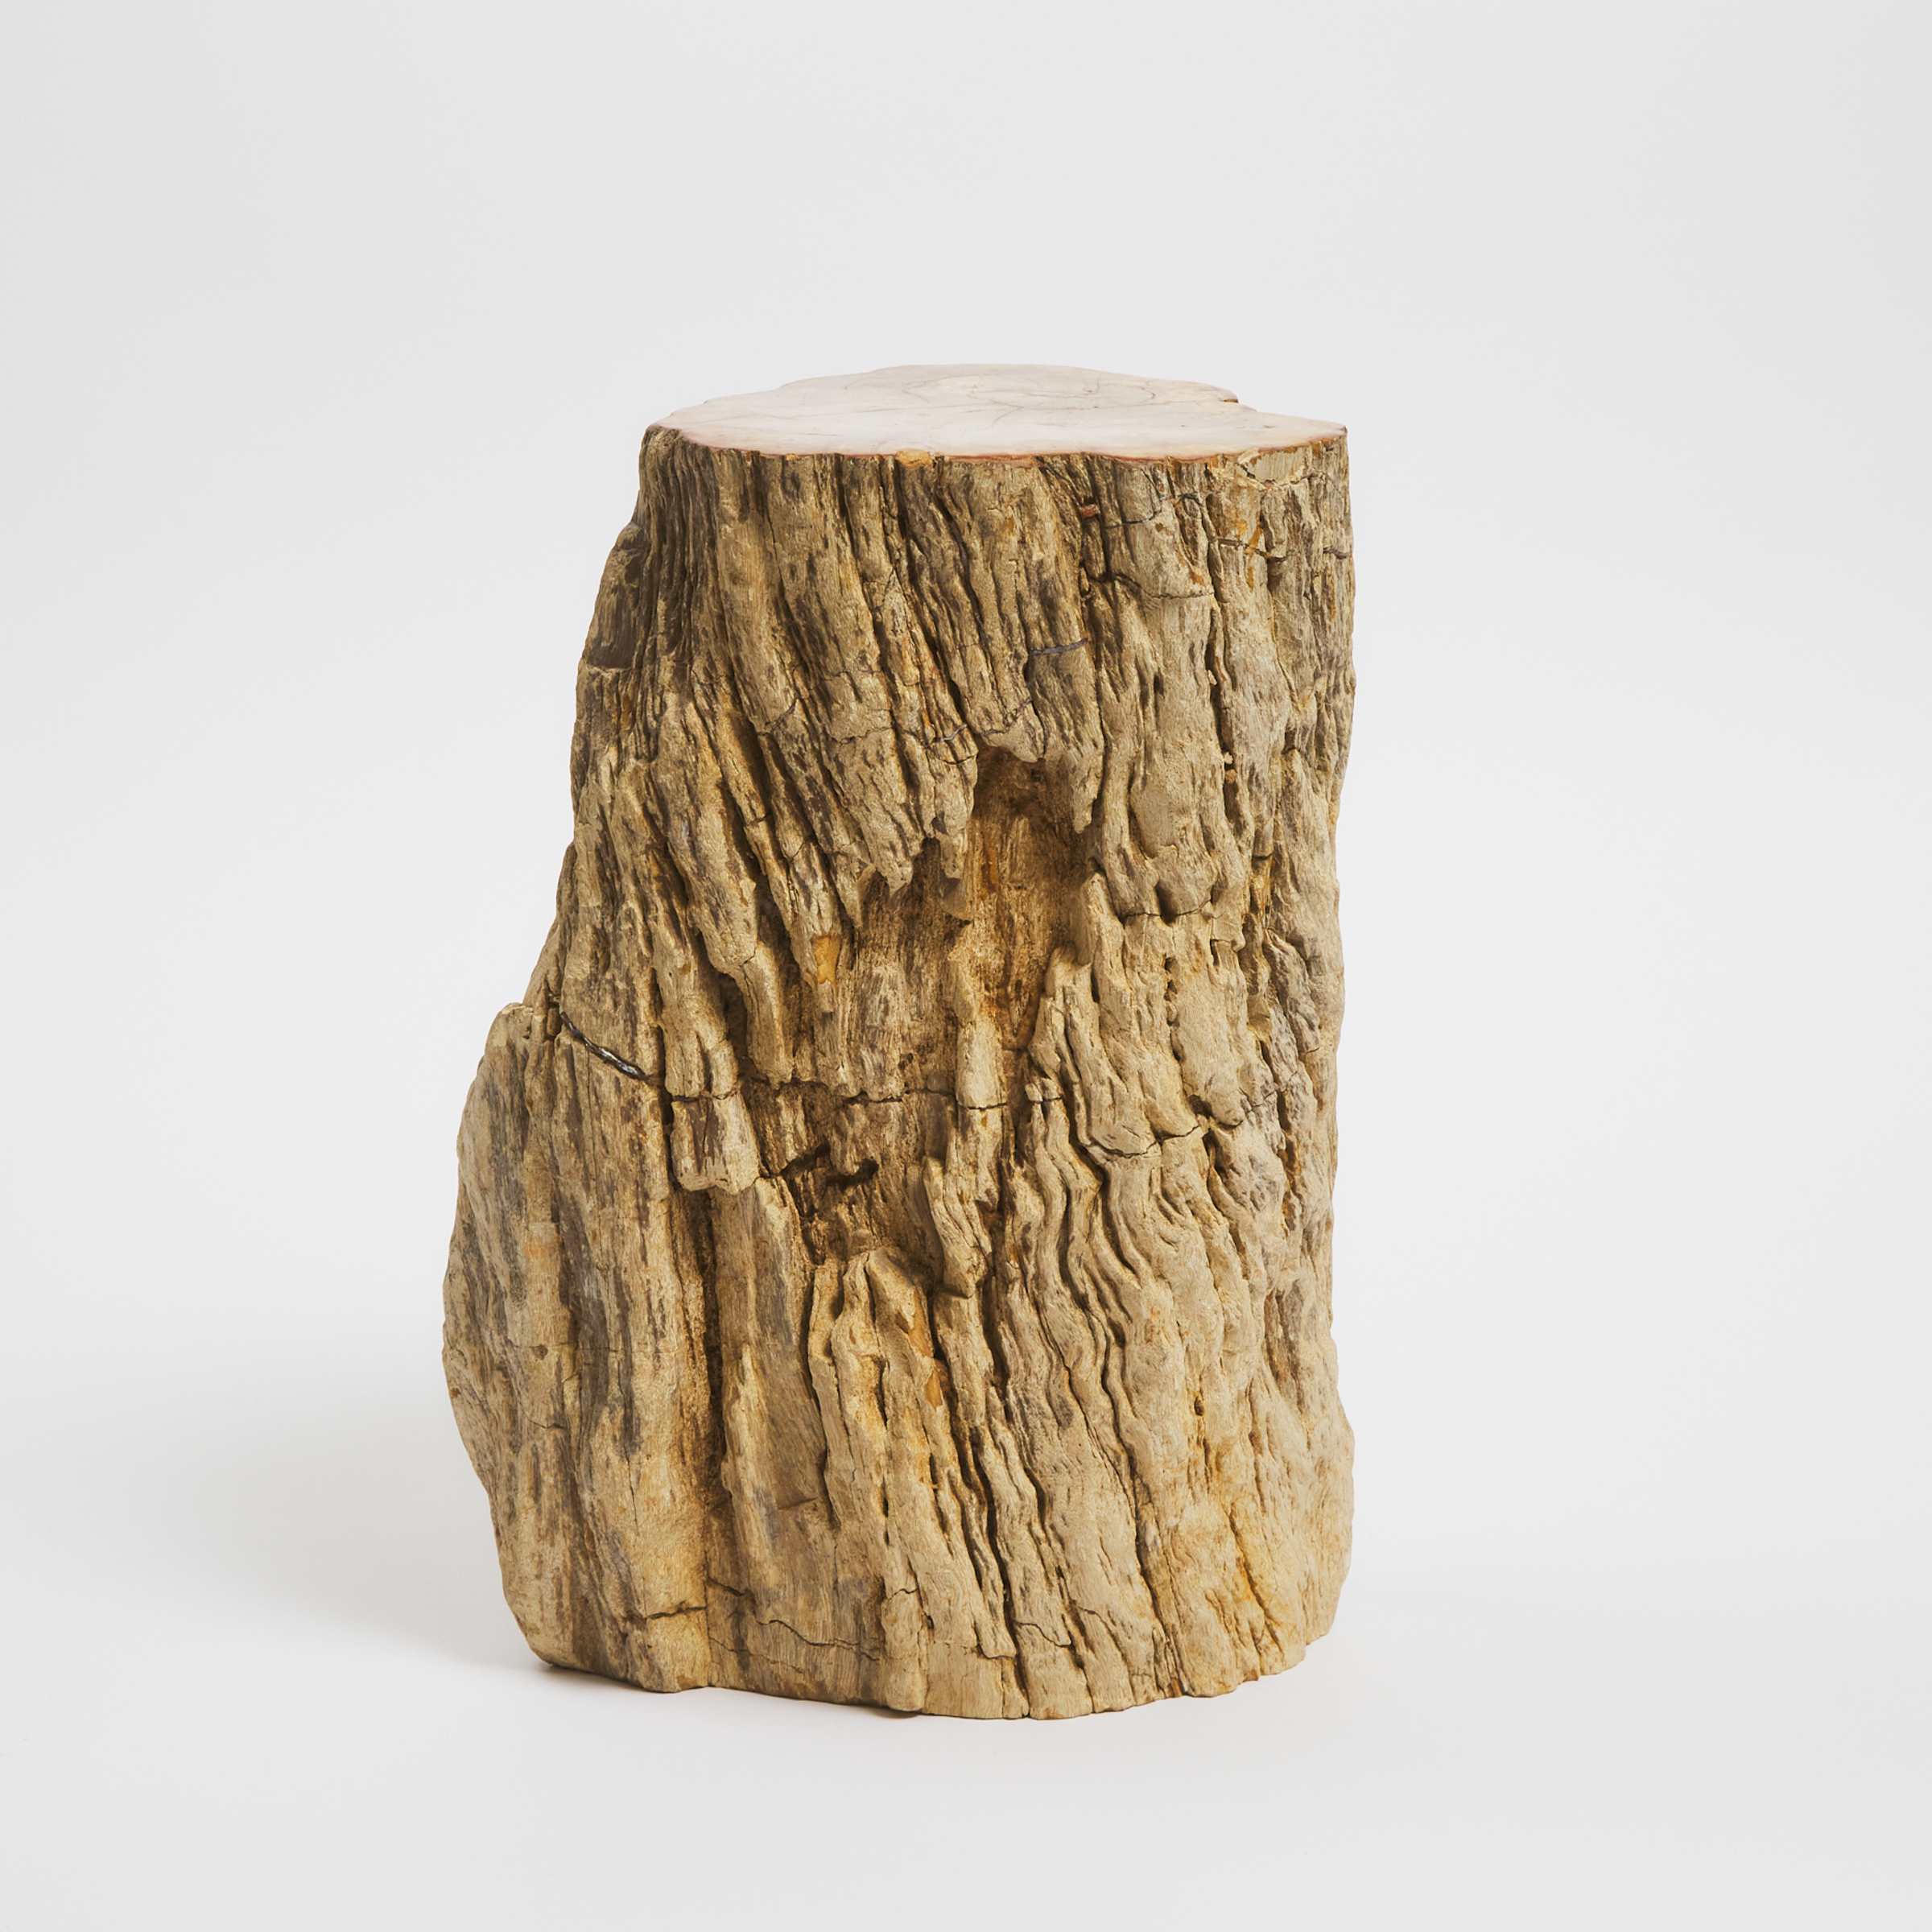 A Petrified Wood Stool